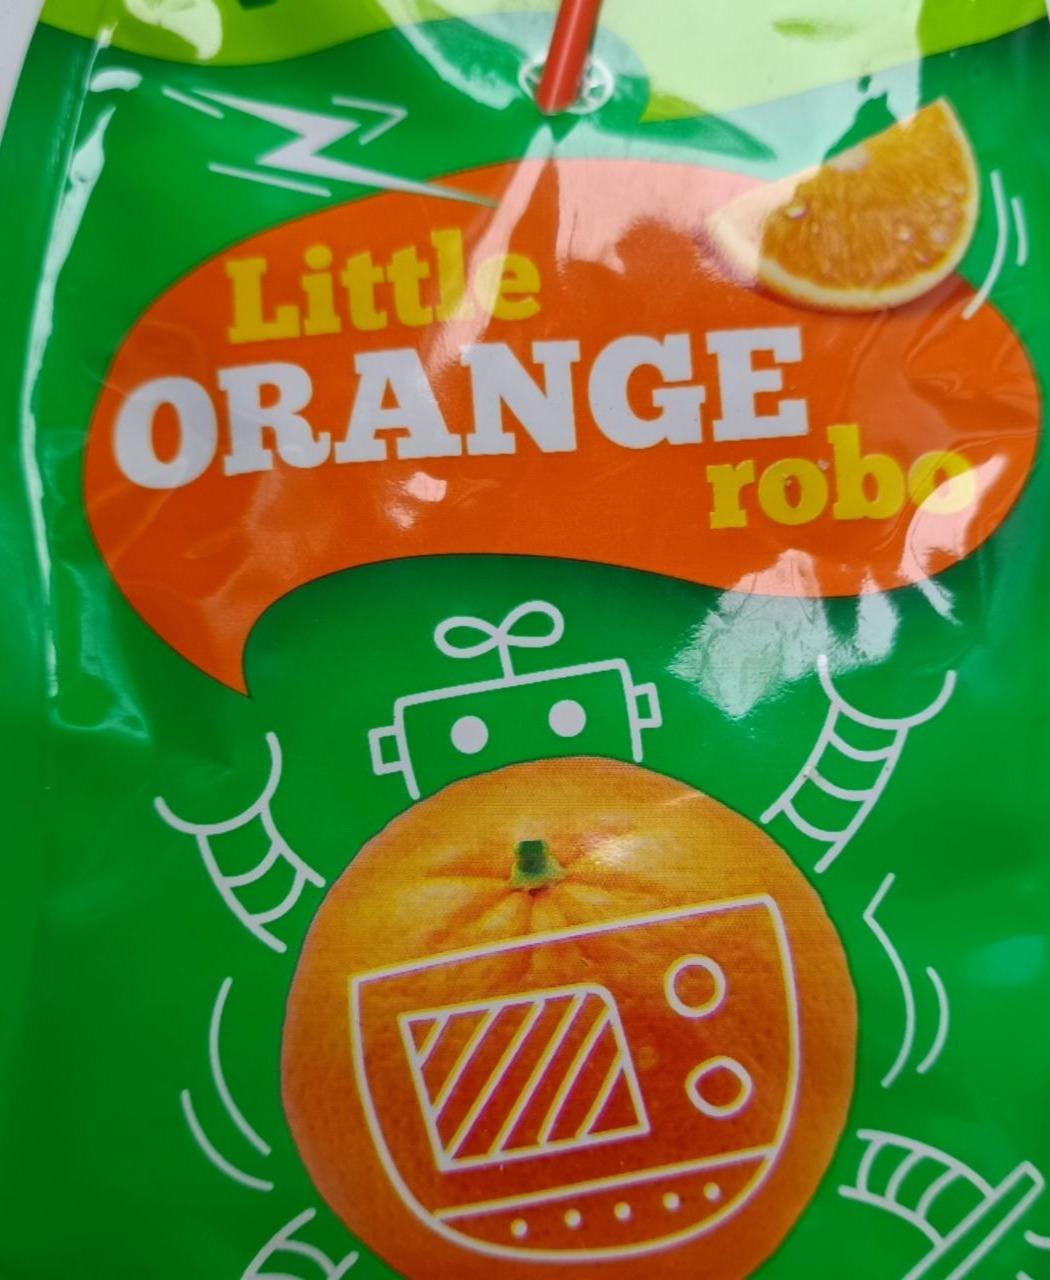 Фото - Напій апельсиновий Little orange robo VitaGo